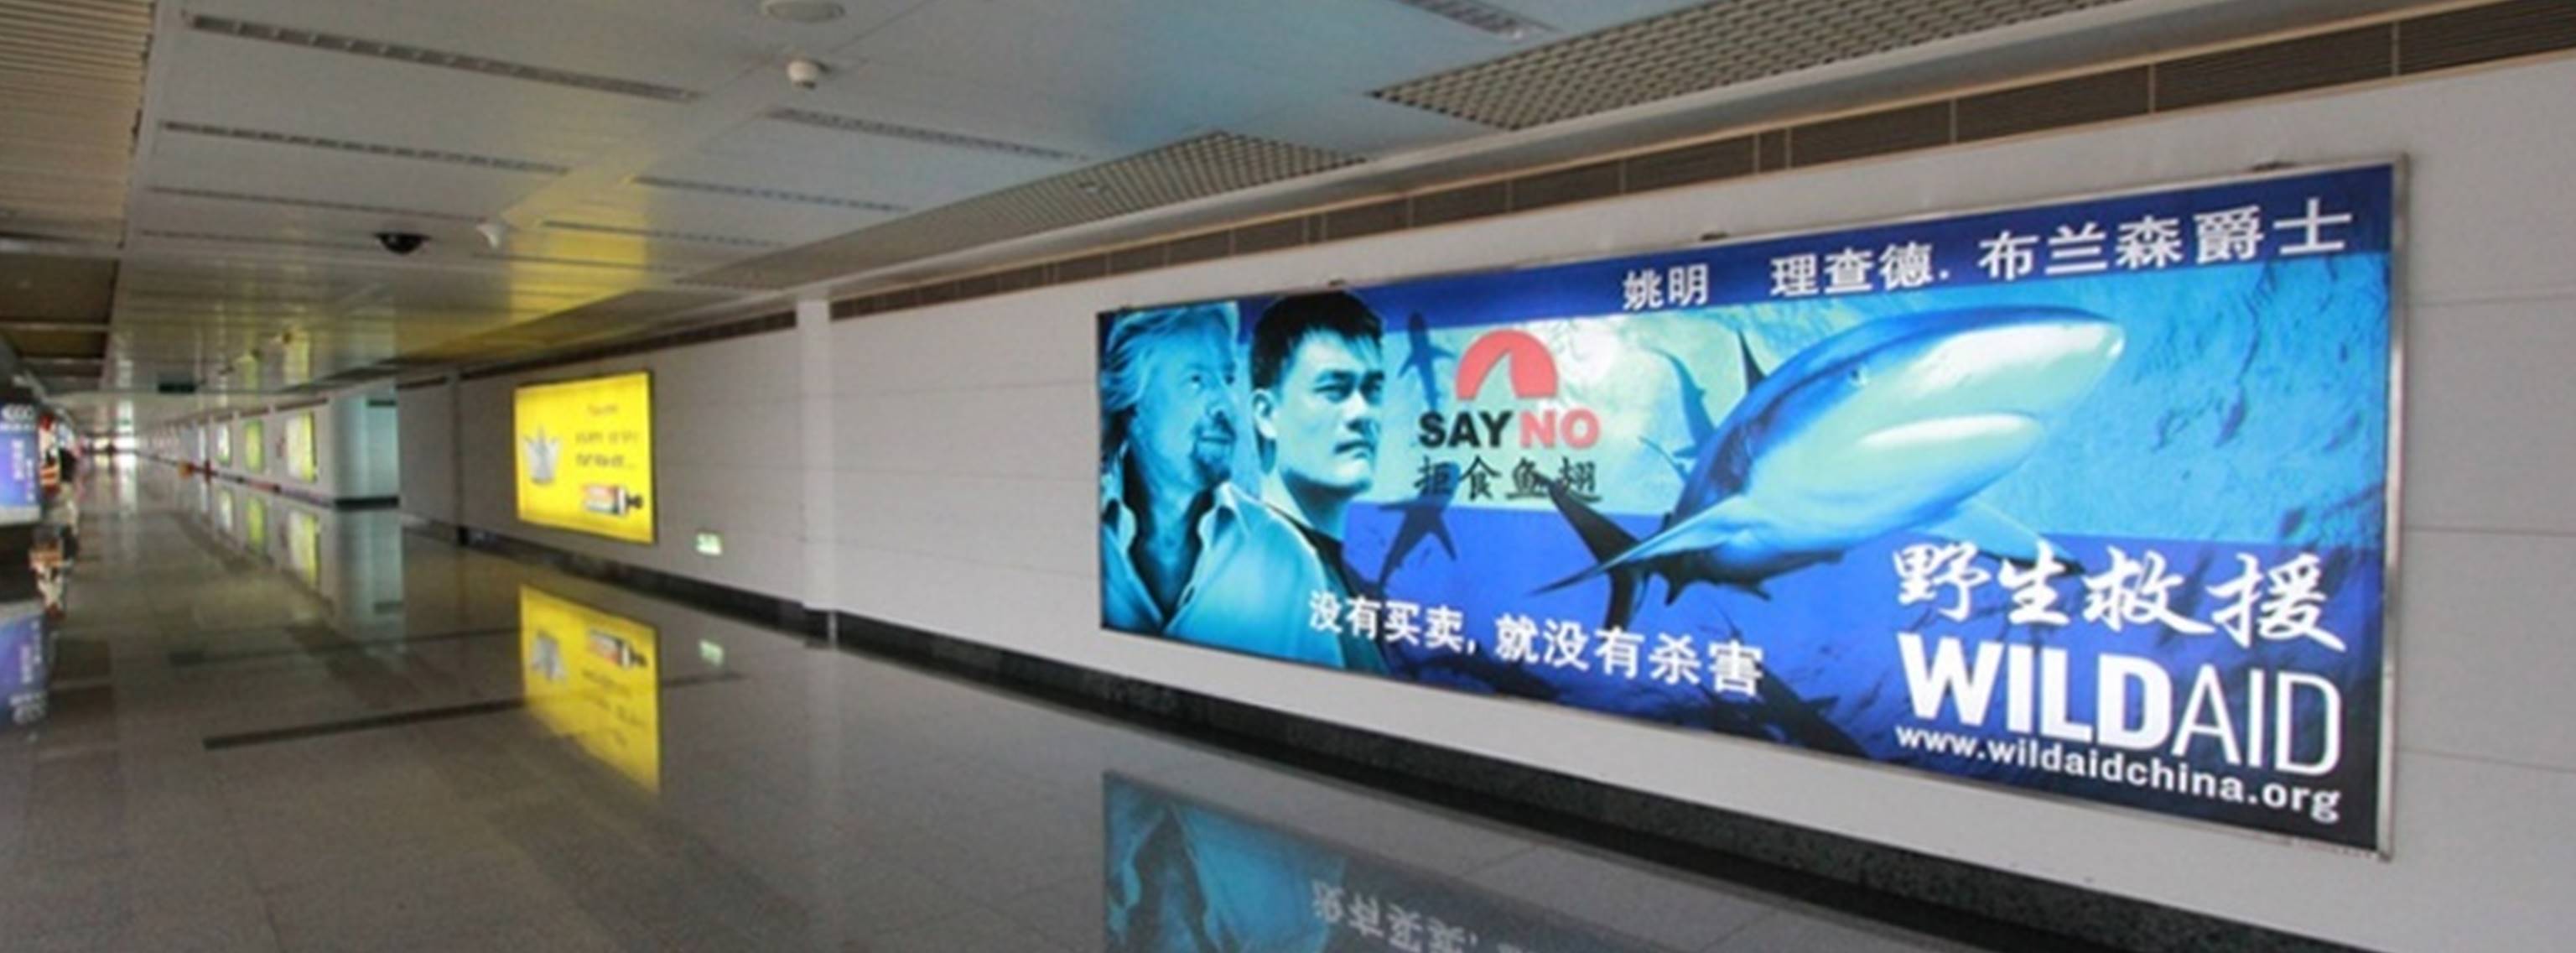 杭州萧山机场广告-T1到达夹层长廊灯箱DA23